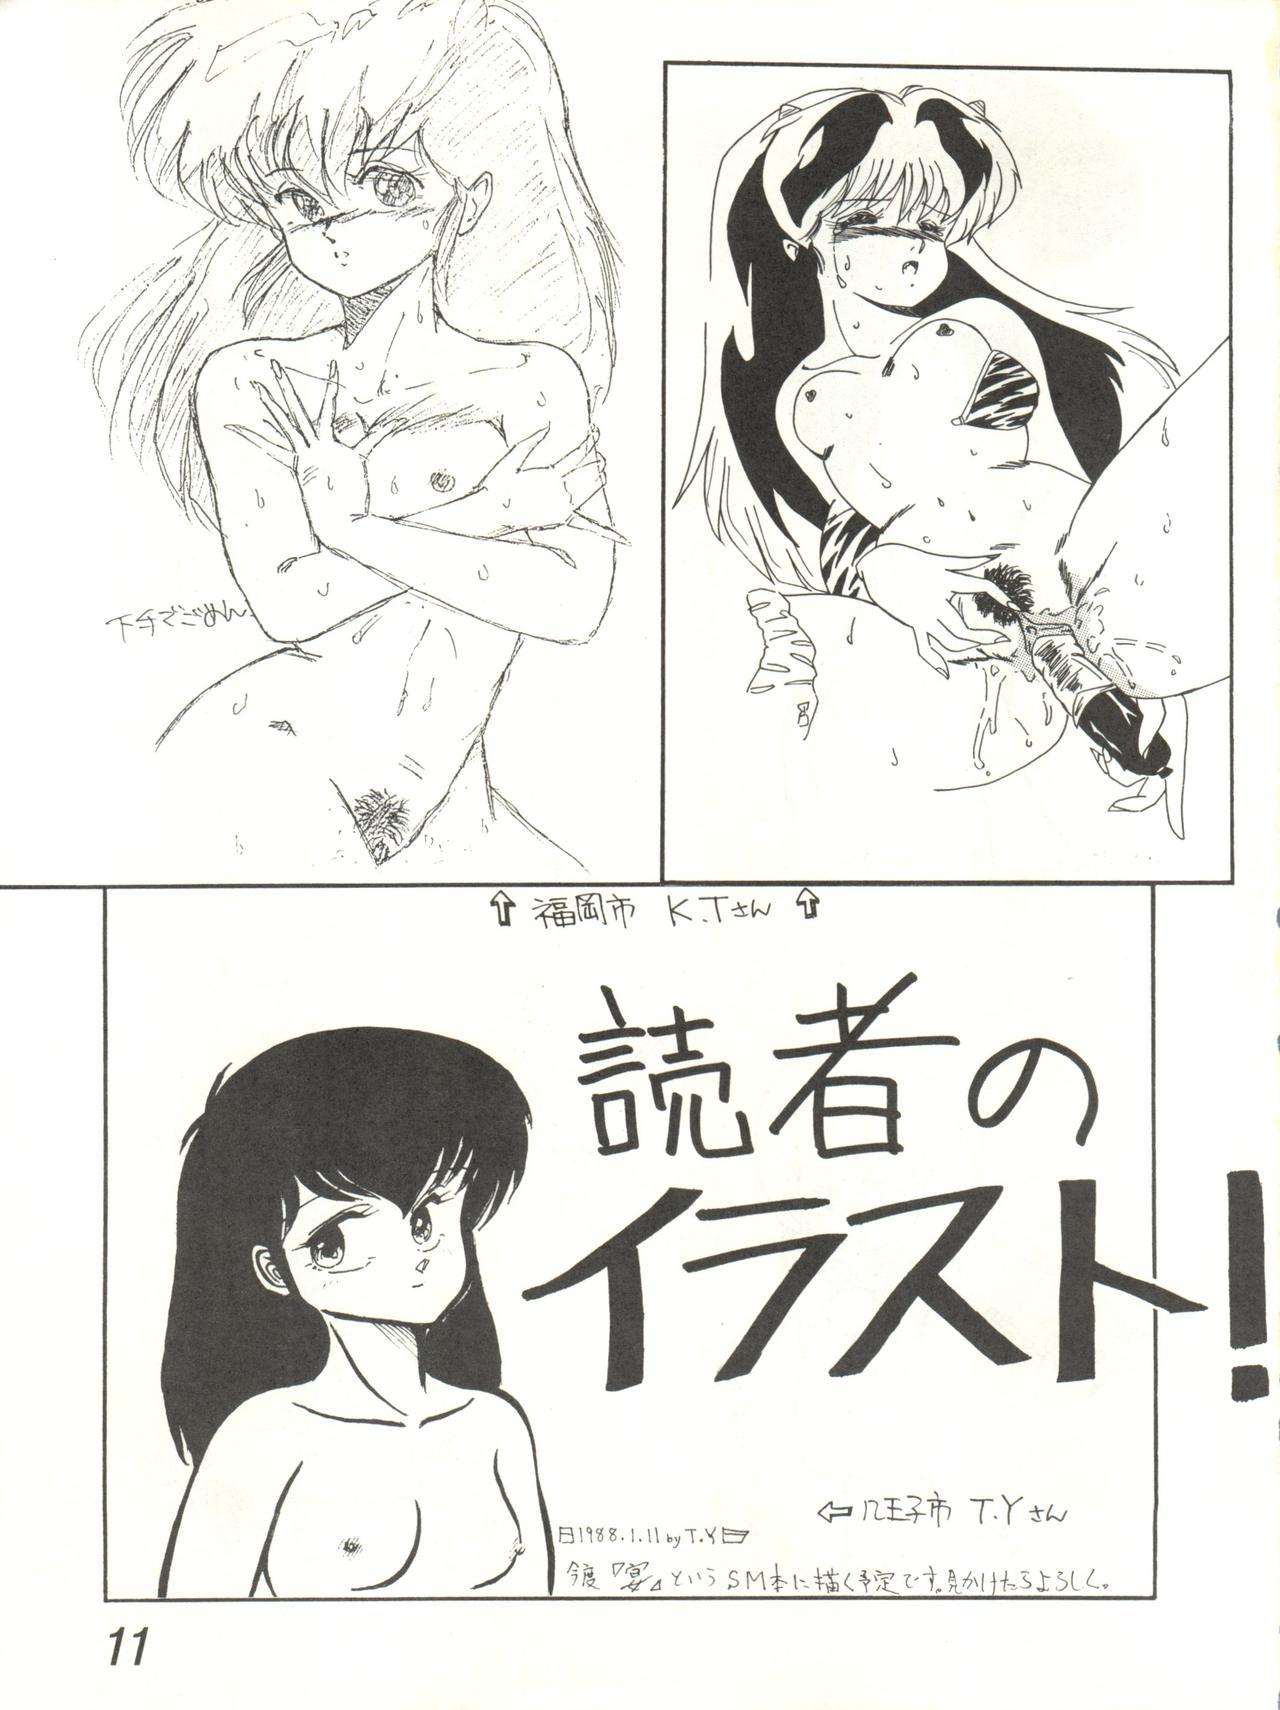 Nice Ikkoku-kan 0 Gou Shitsu Part V - Maison ikkoku Milf Sex - Page 11